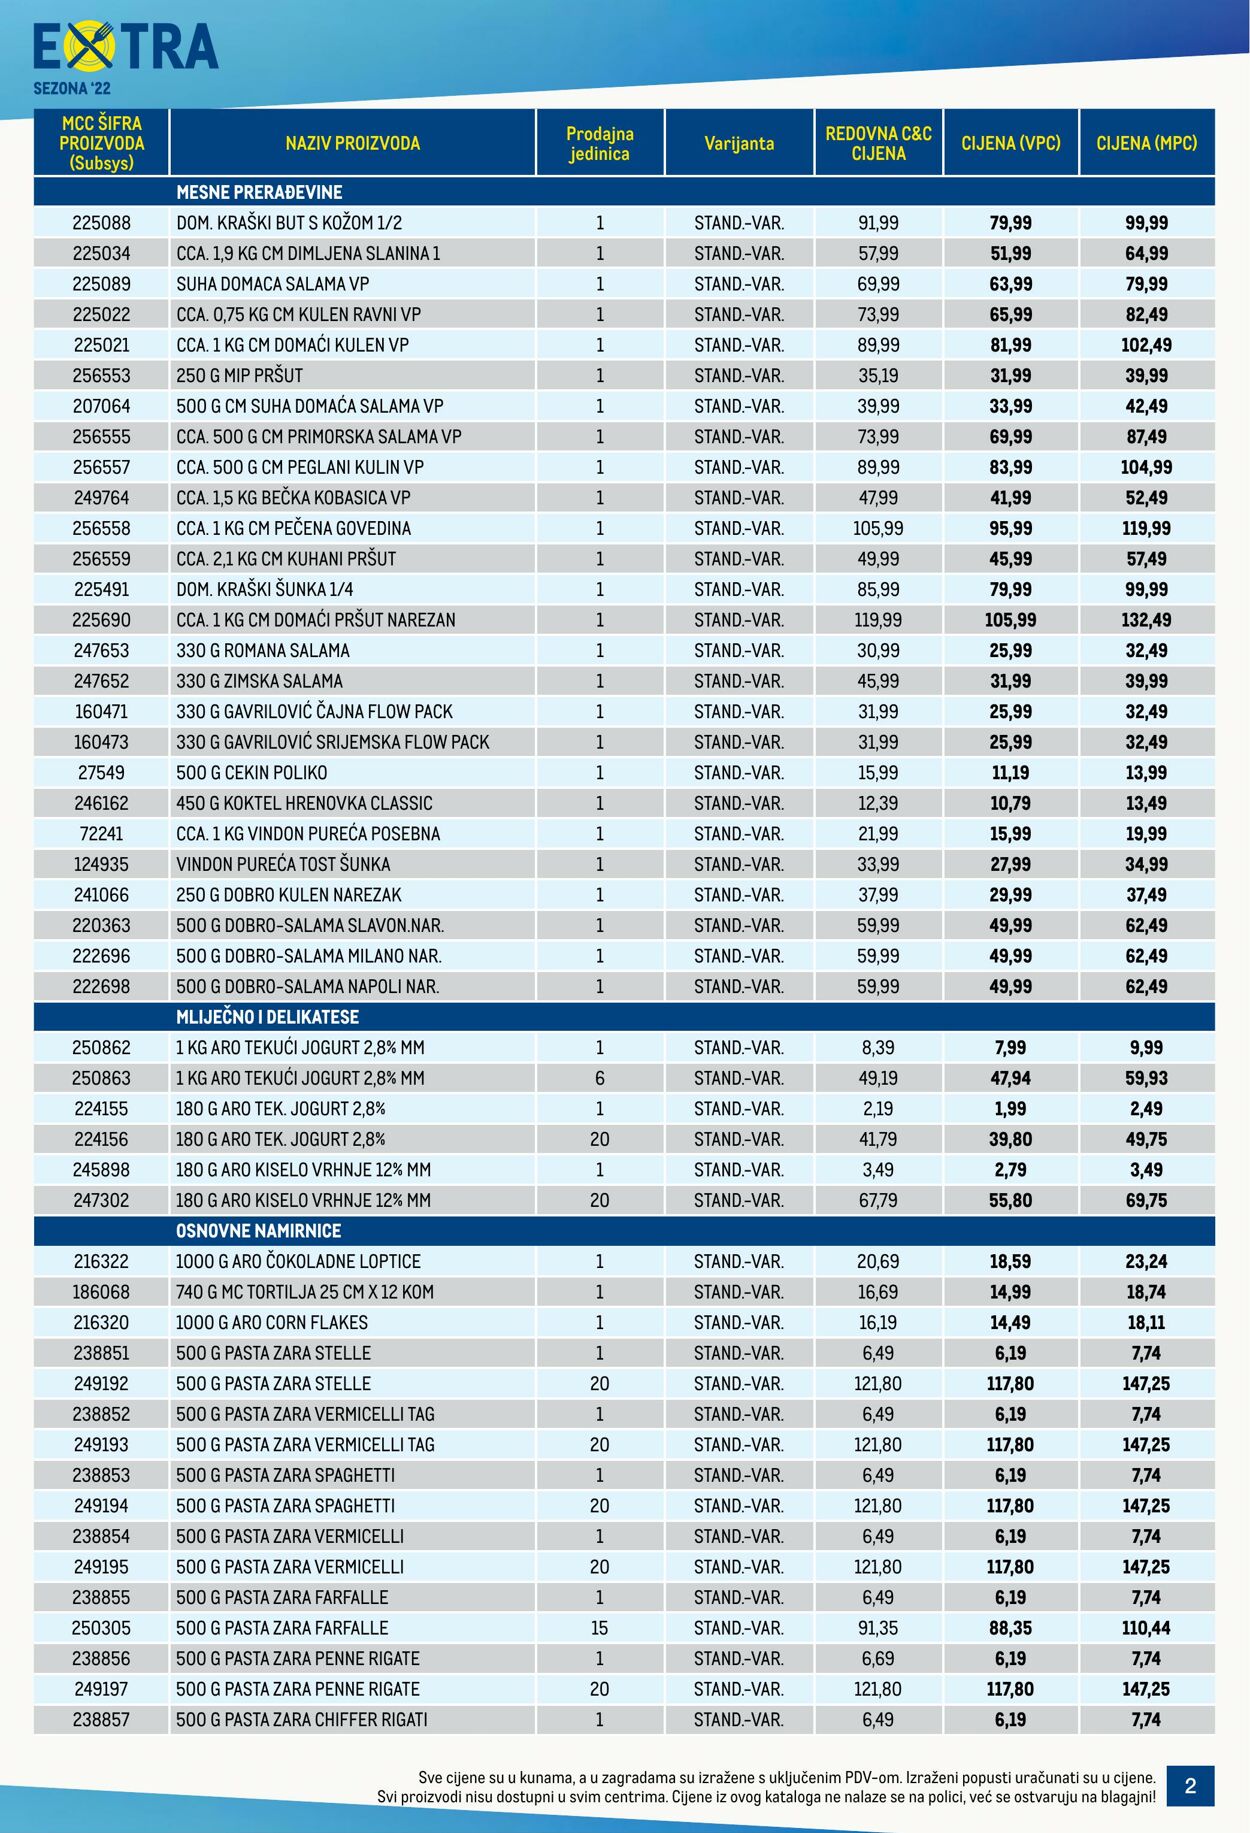 Katalog Metro 21.07.2022 - 03.08.2022